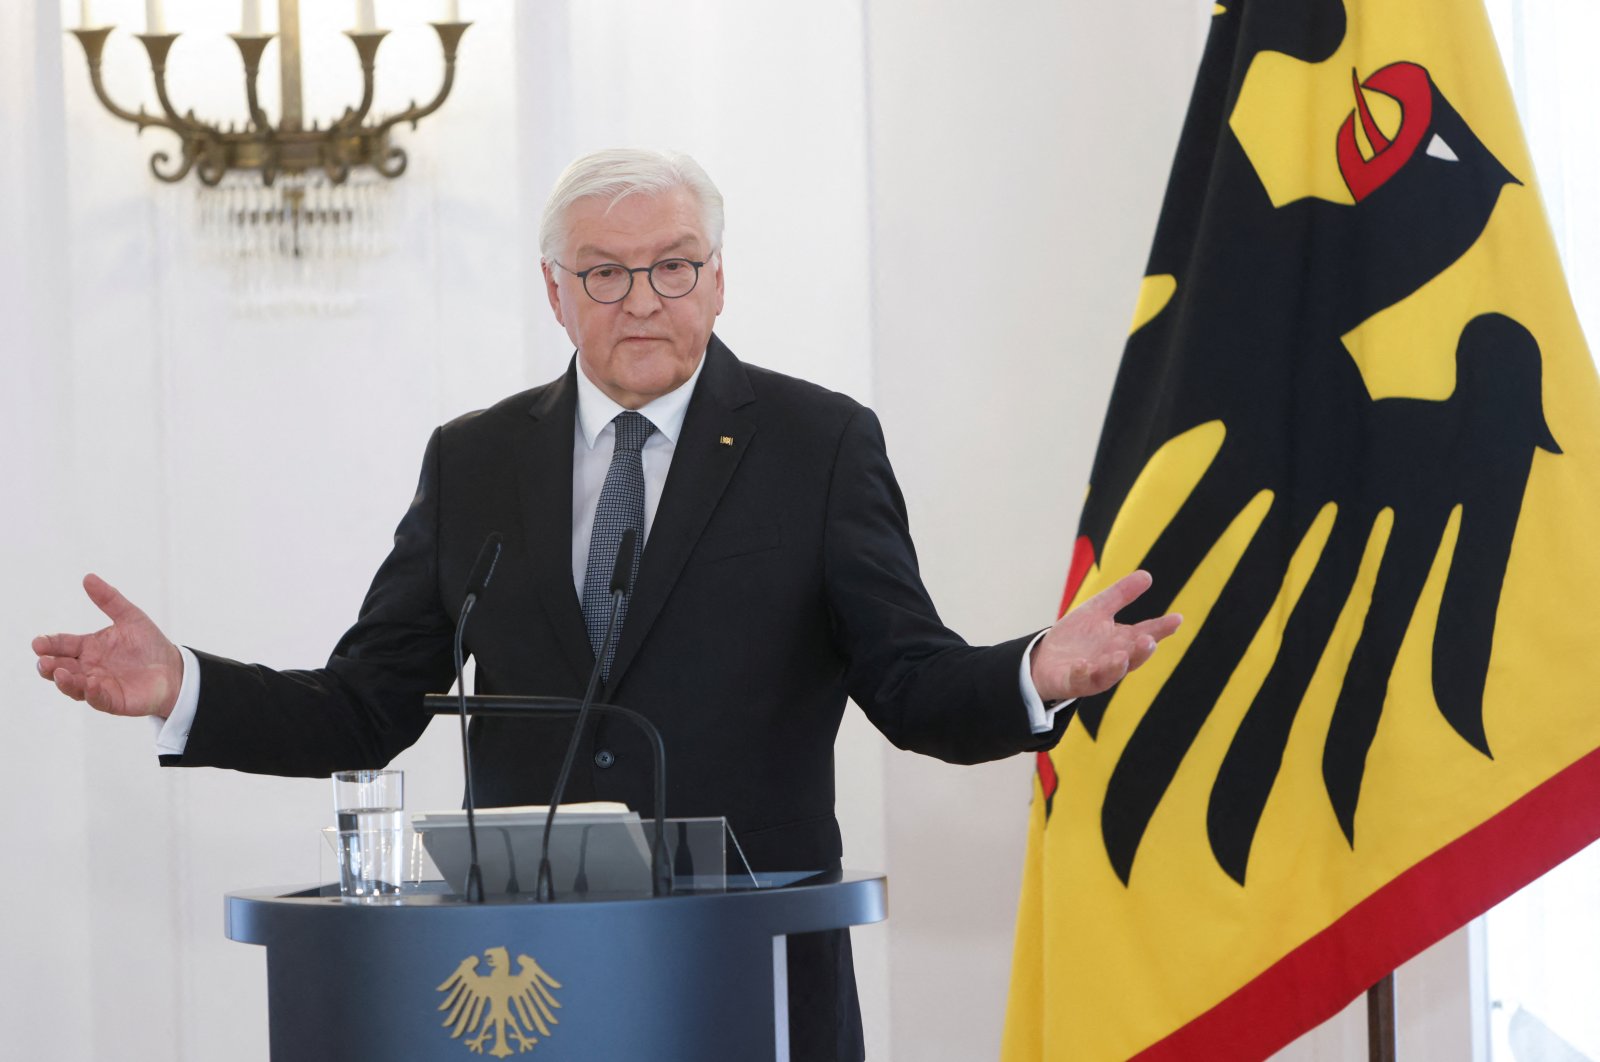 Dunia menuju fase konfrontasi, presiden Jerman memperingatkan